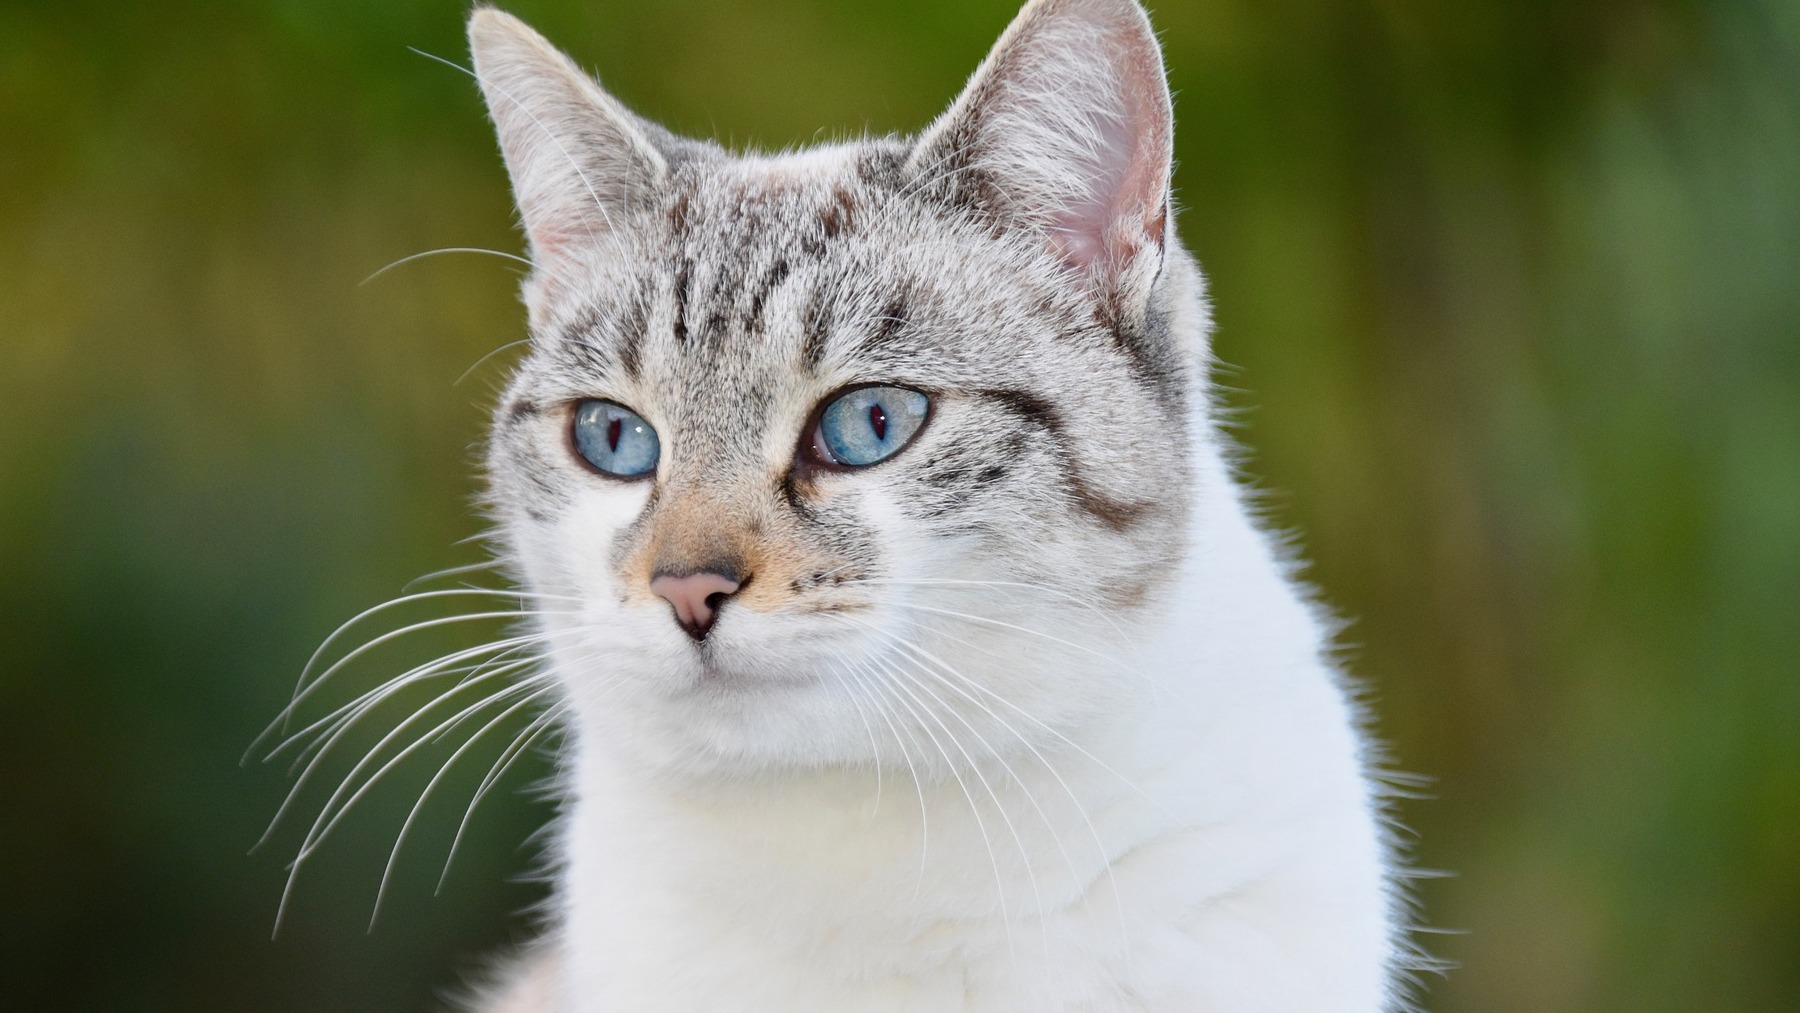 Arenero autolimpiable para gatos: ventajas e inconvenientes